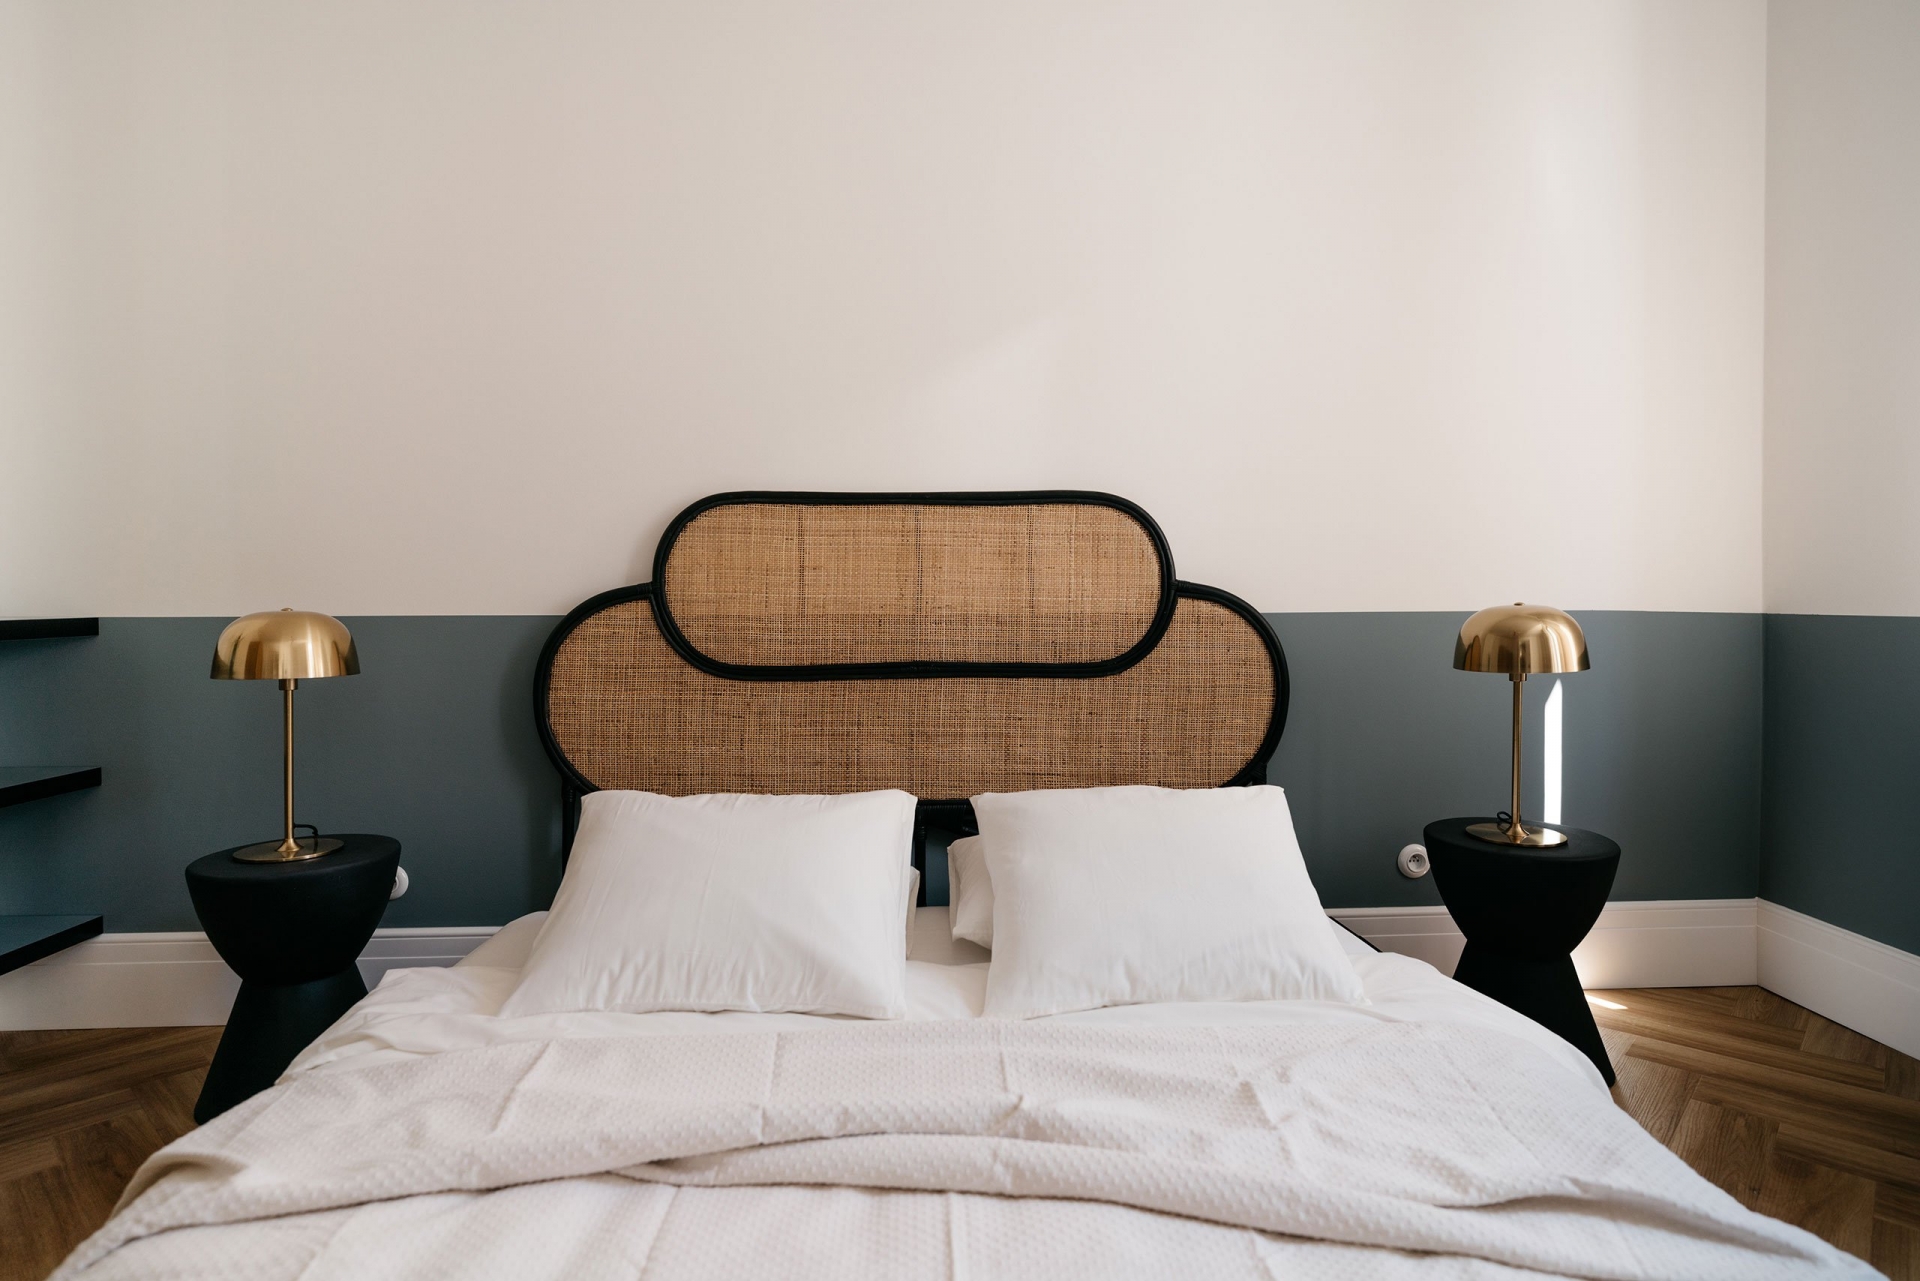 Phòng ngủ sử dụng gam màu trắng và xanh cổ vịt làm điểm nhấn trang trí, nổi bật là đầu giường bằng mây tre đan mộc mạc. Bộ táp đầu giường và đèn bàn đặt đối xứng cho phòng ngủ cái nhìn cân đối.